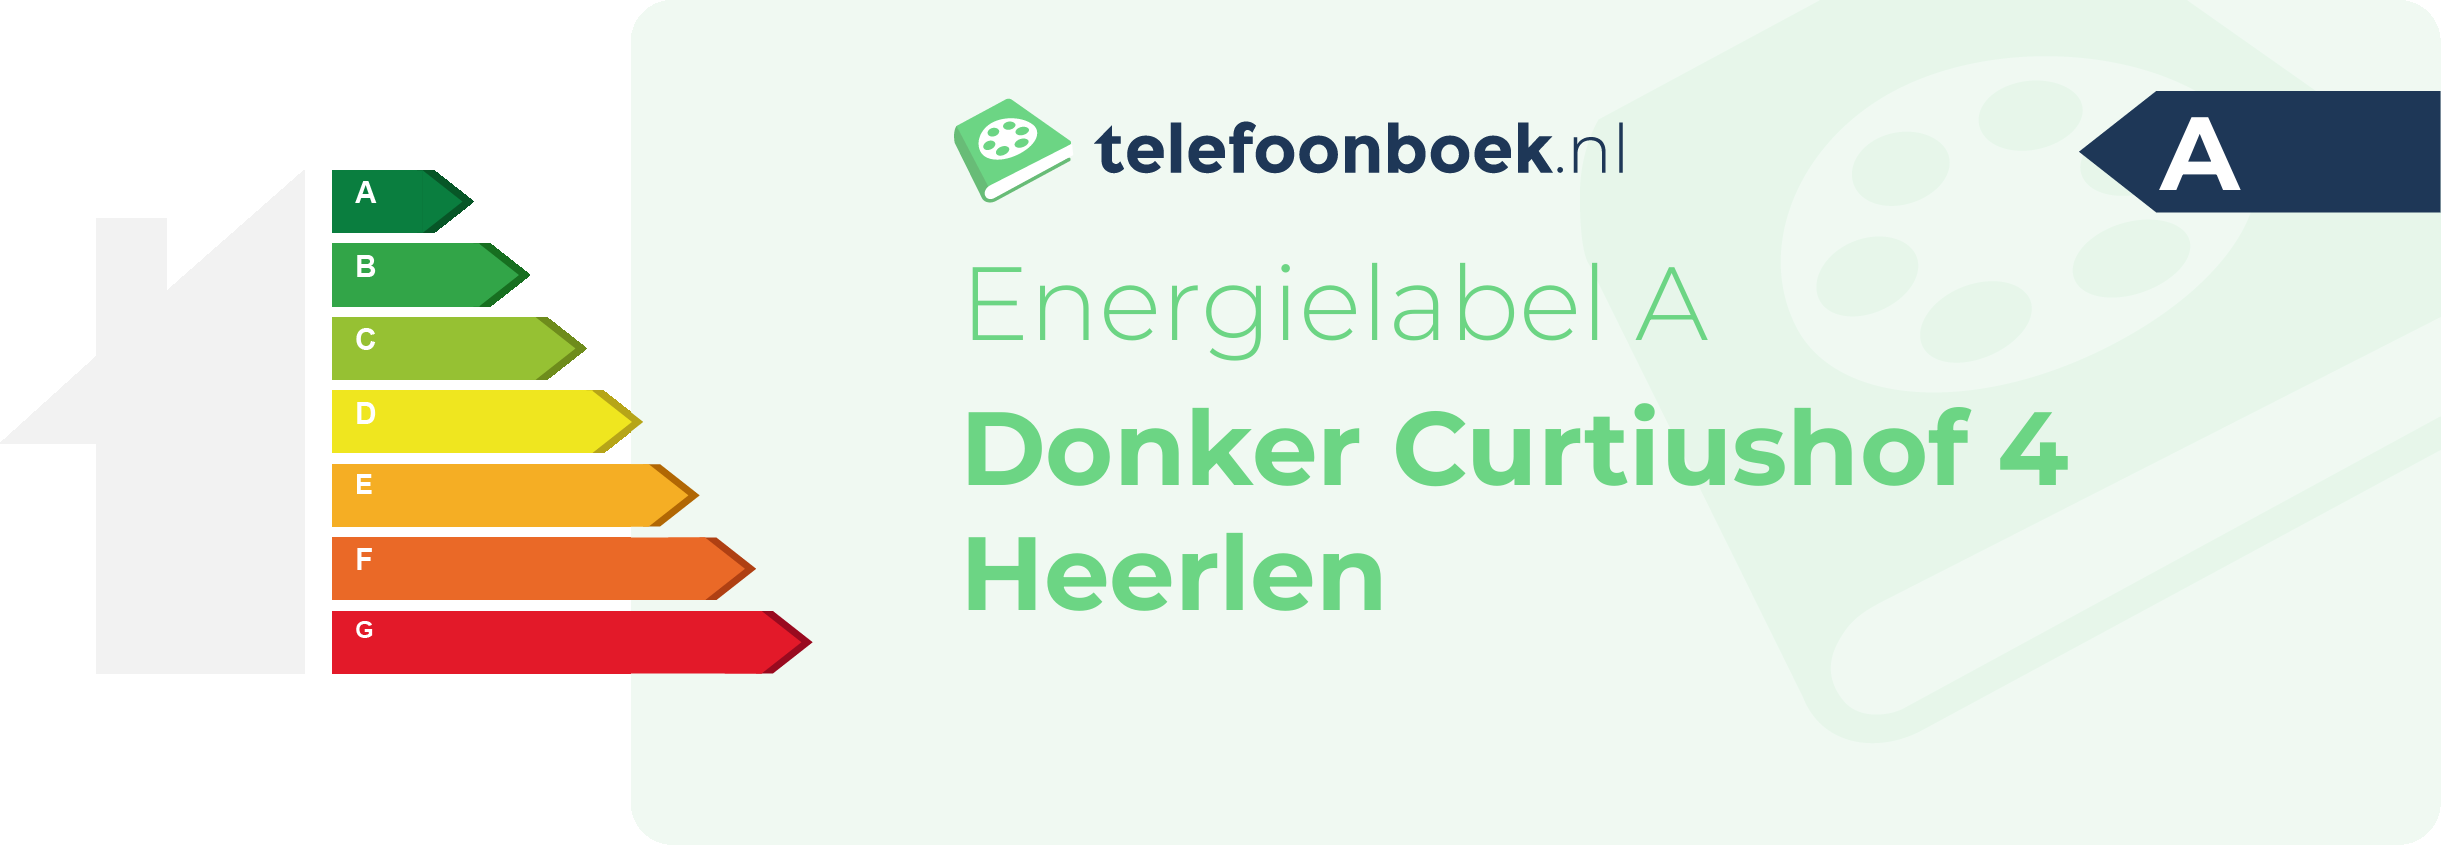 Energielabel Donker Curtiushof 4 Heerlen